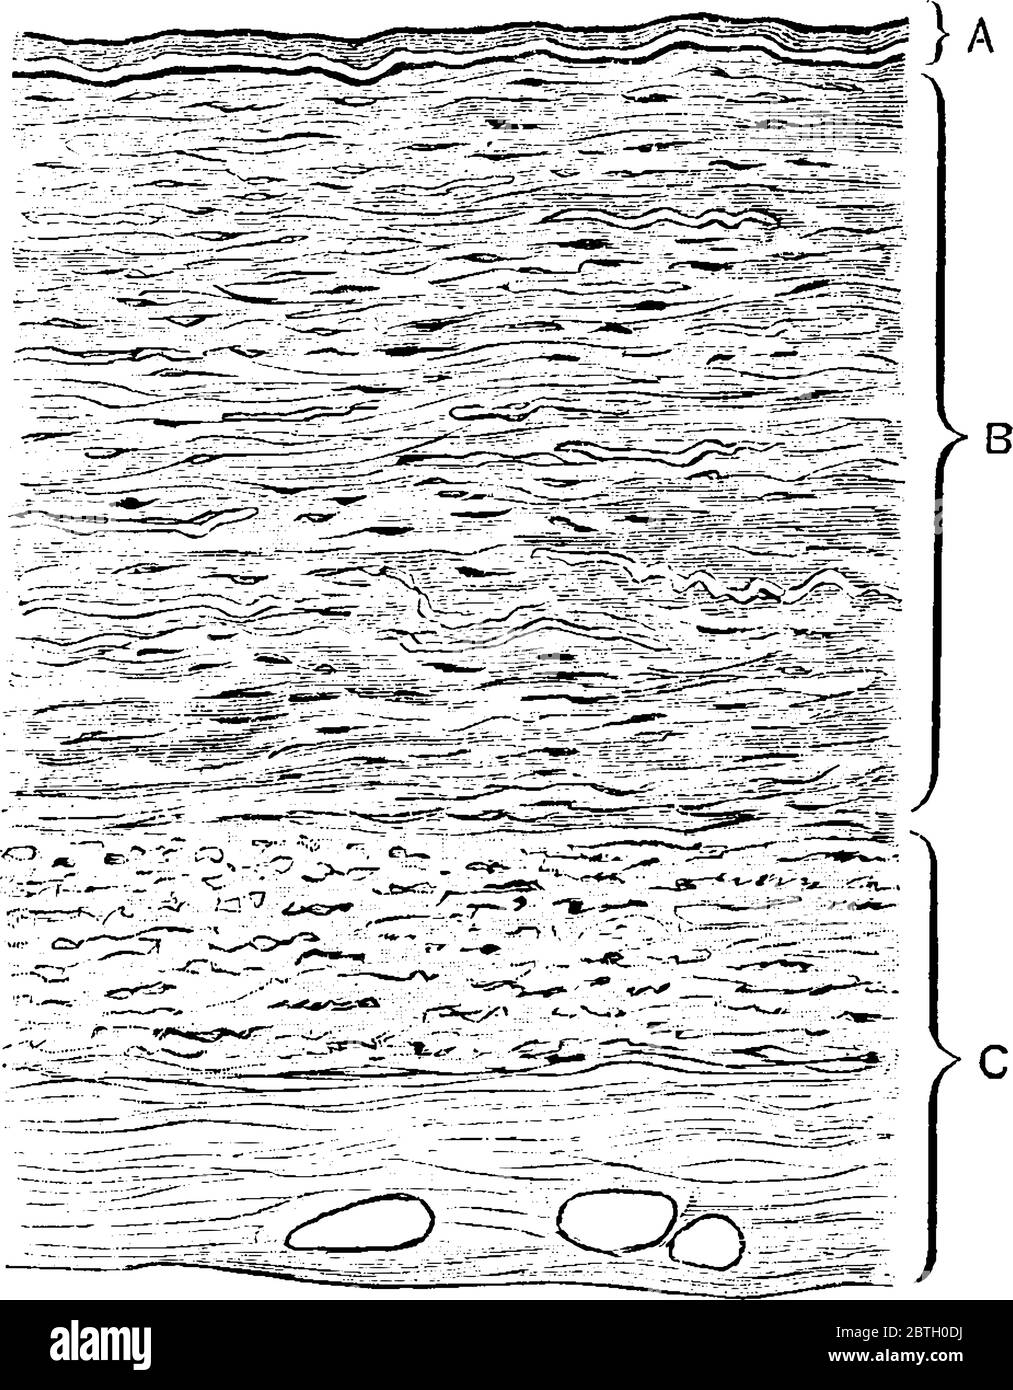 La section transversale à travers la paroi d'une veine avec ses parties tunica intima, tunica media et tunica externa, marqué a, B et C, ligne vintage d Illustration de Vecteur